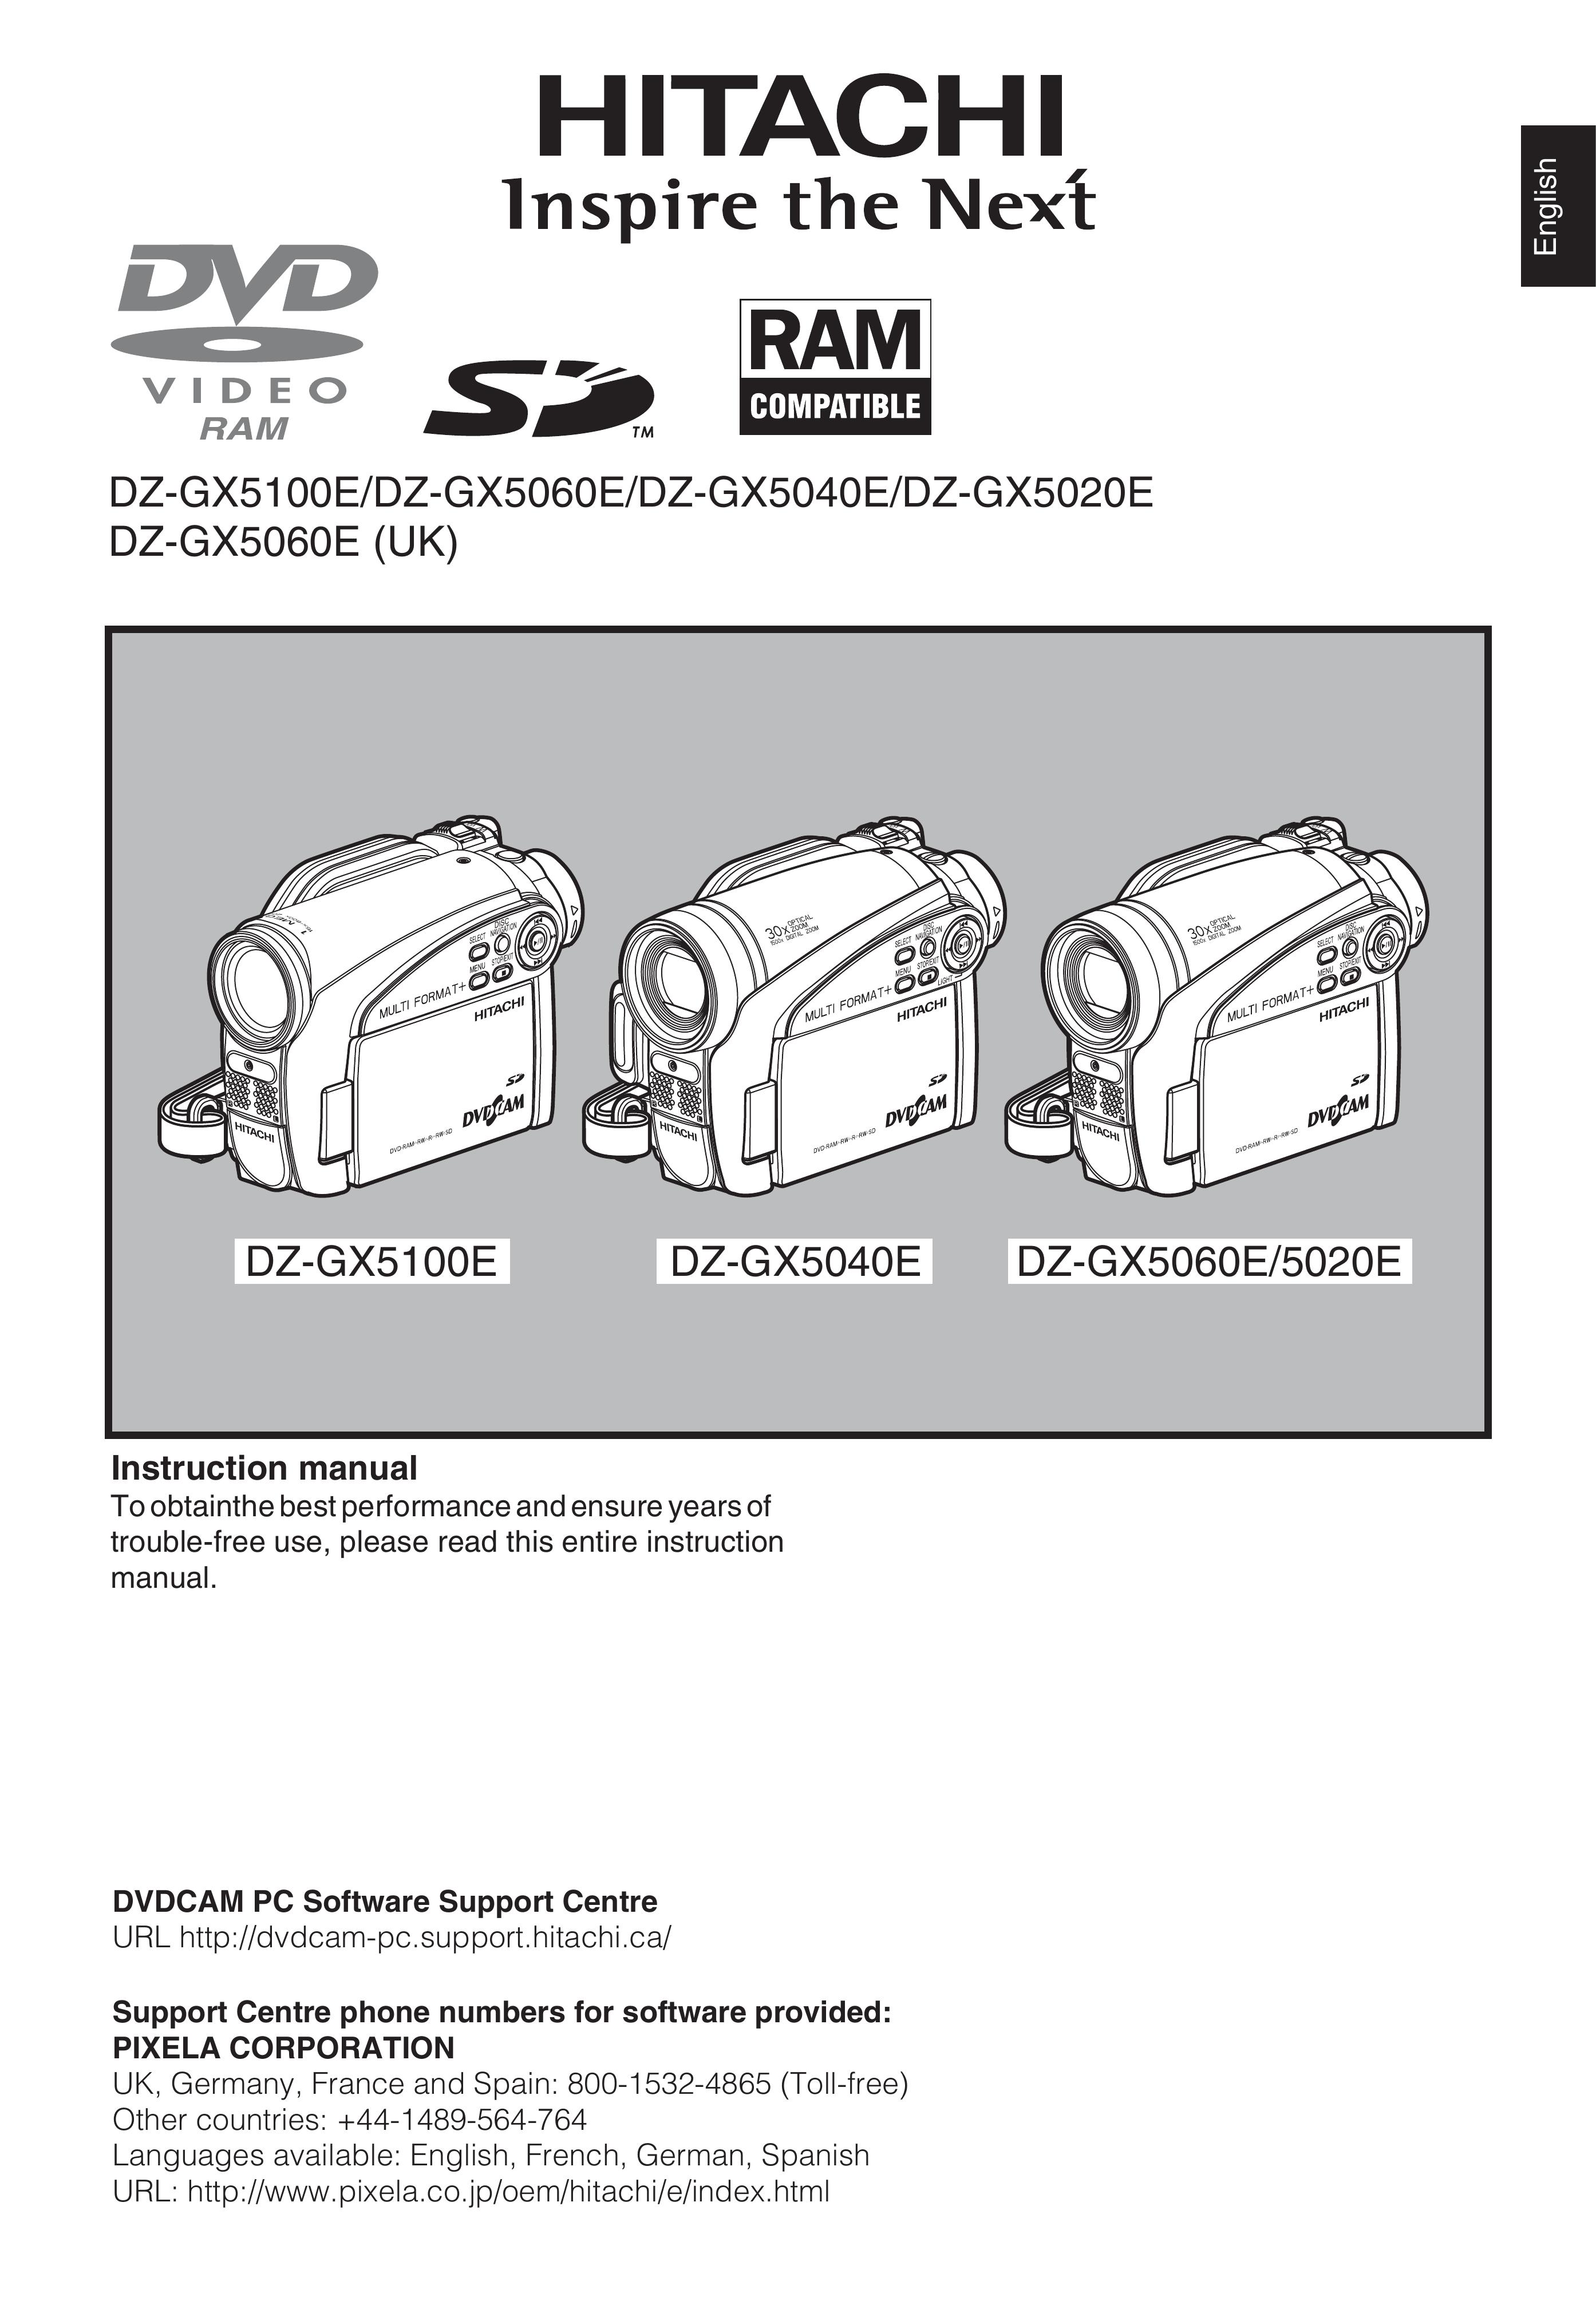 Hitachi DZ-GX5040E Camcorder User Manual